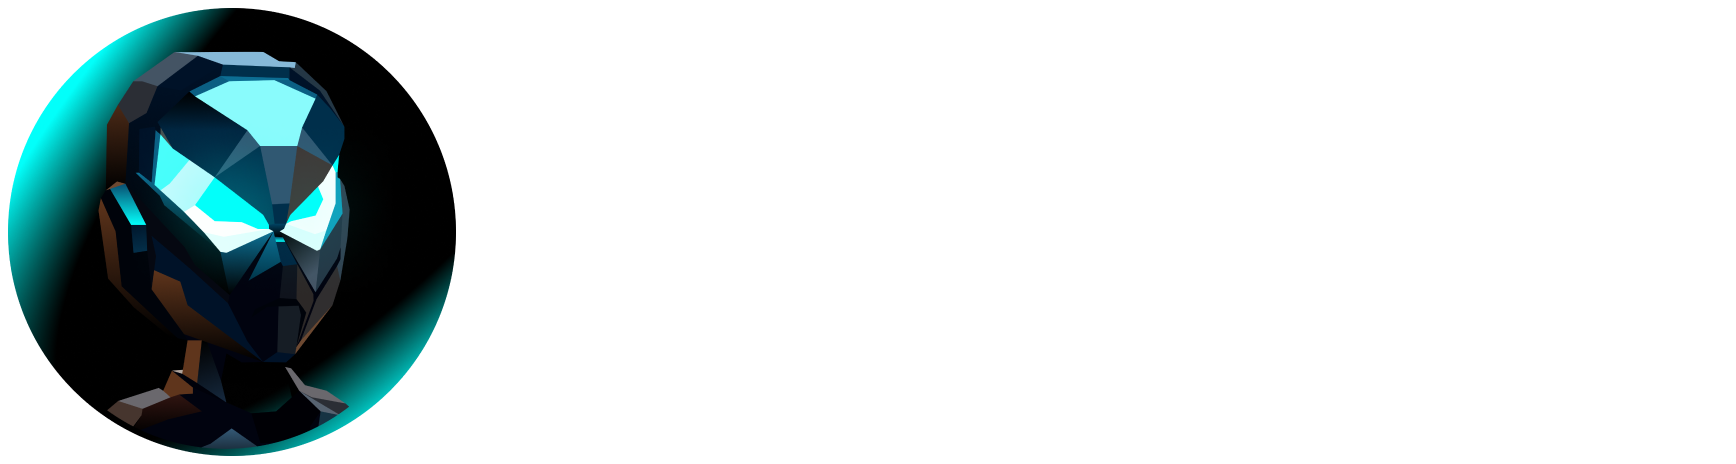 XCepterc